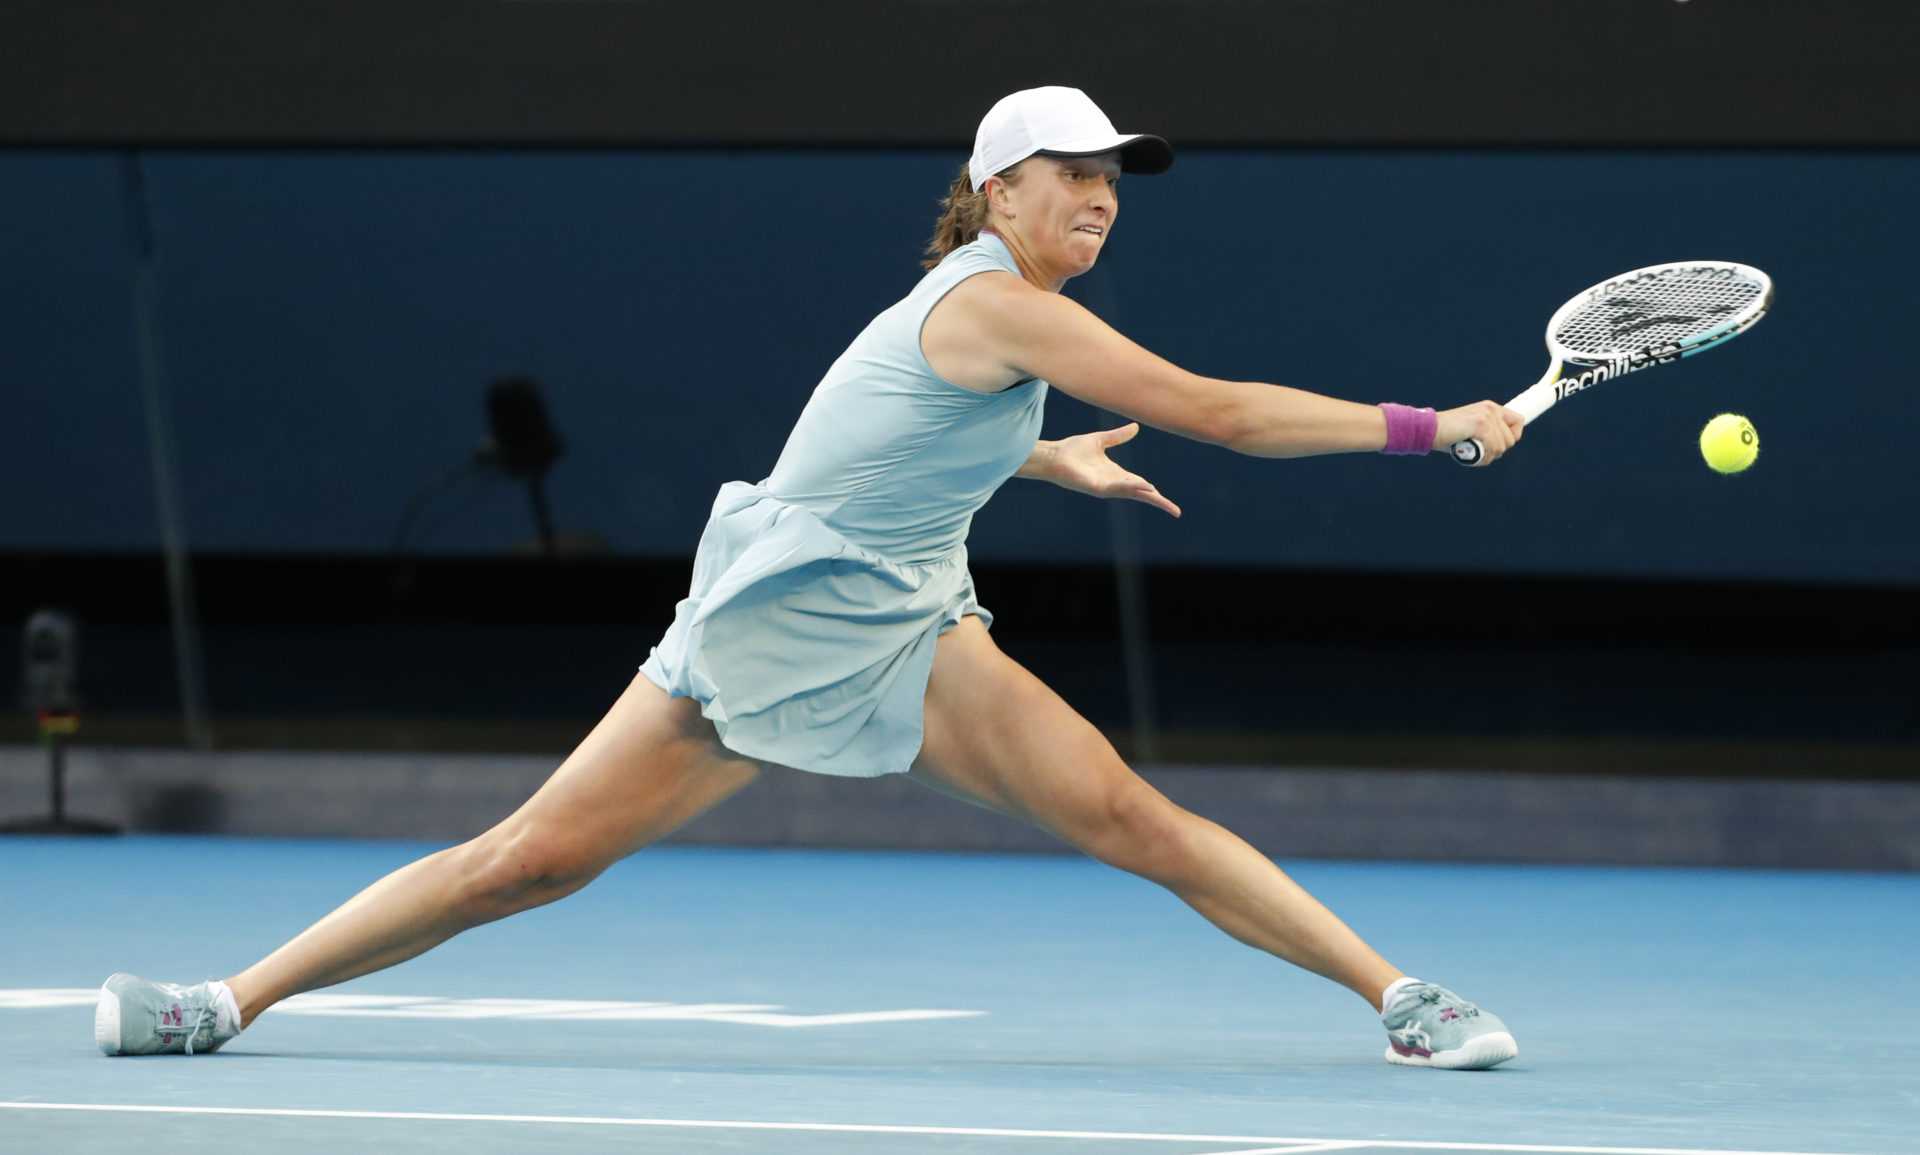 Iga Swiatek bouleverse Belinda Bencic pour décrocher le titre de Maiden sur un court dur à la WTA Adelaide 2021